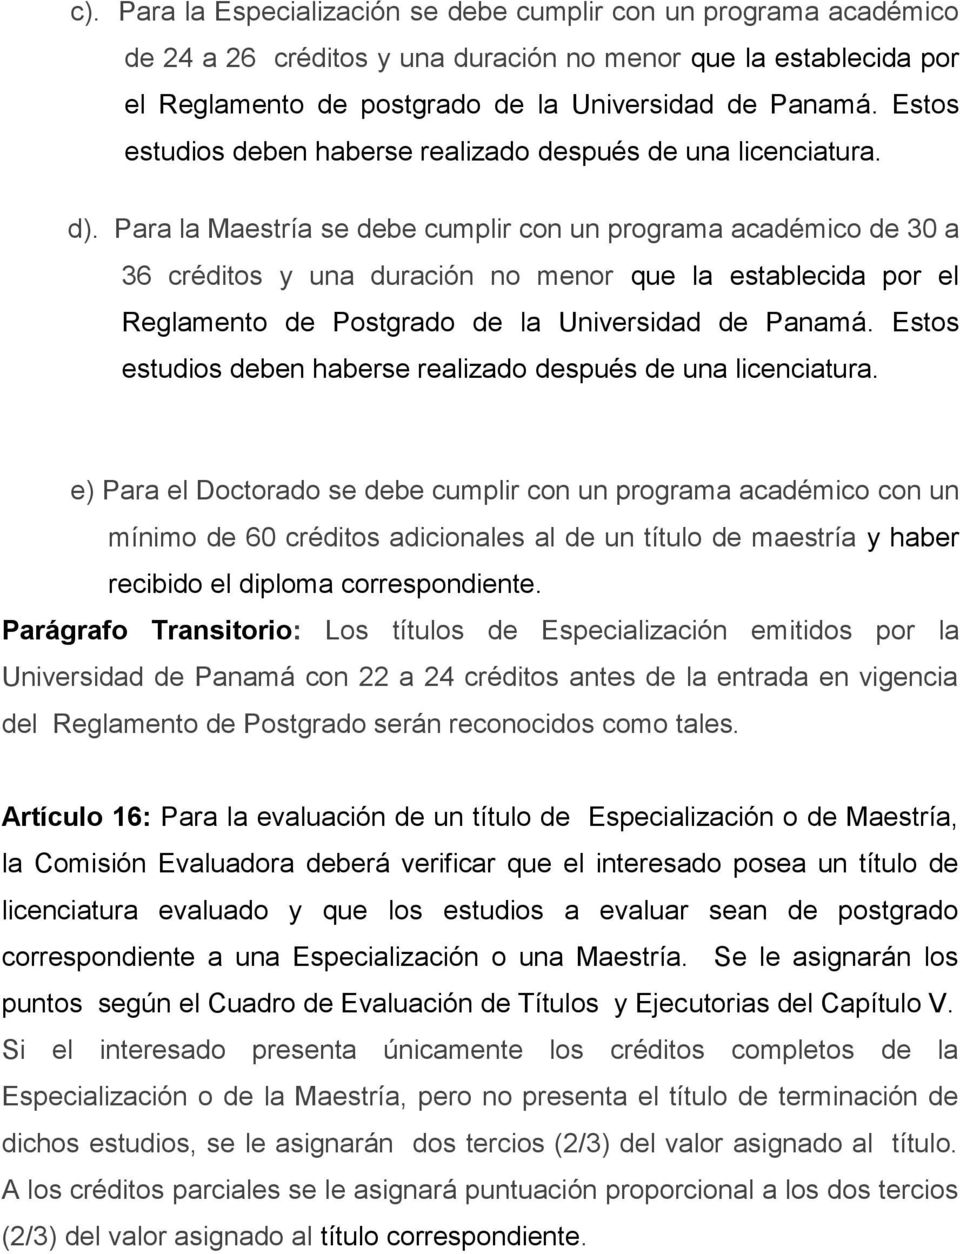 Para la Maestría se debe cumplir con un programa académico de 30 a 36 créditos y una duración no menor que la establecida por el Reglamento de Postgrado de la Universidad de Panamá.